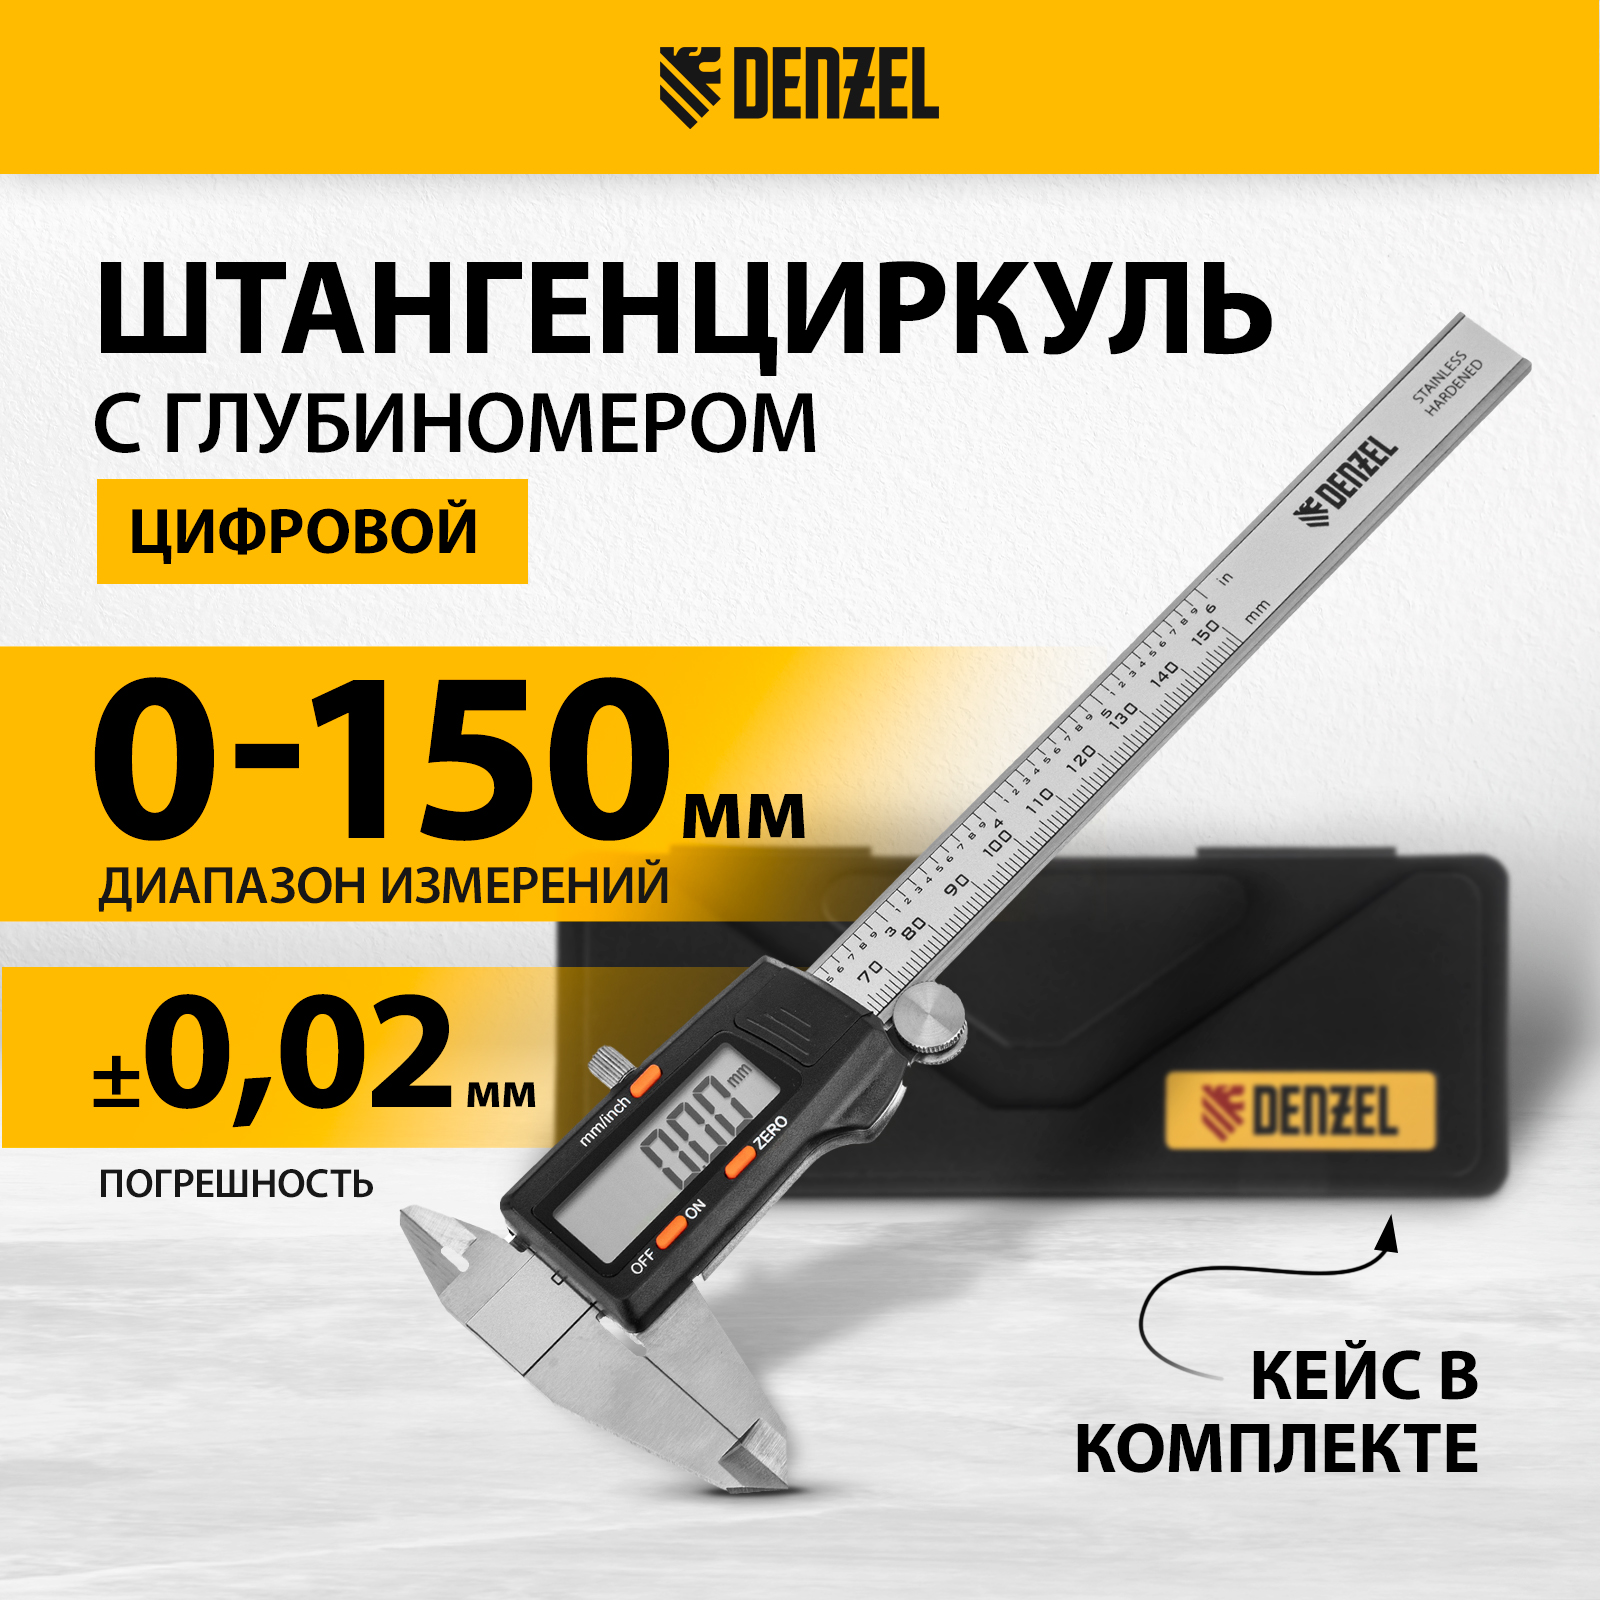 Штангенциркуль DENZEL 150 мм электронный, с глубиномером 31613 электронный обучающий плакат